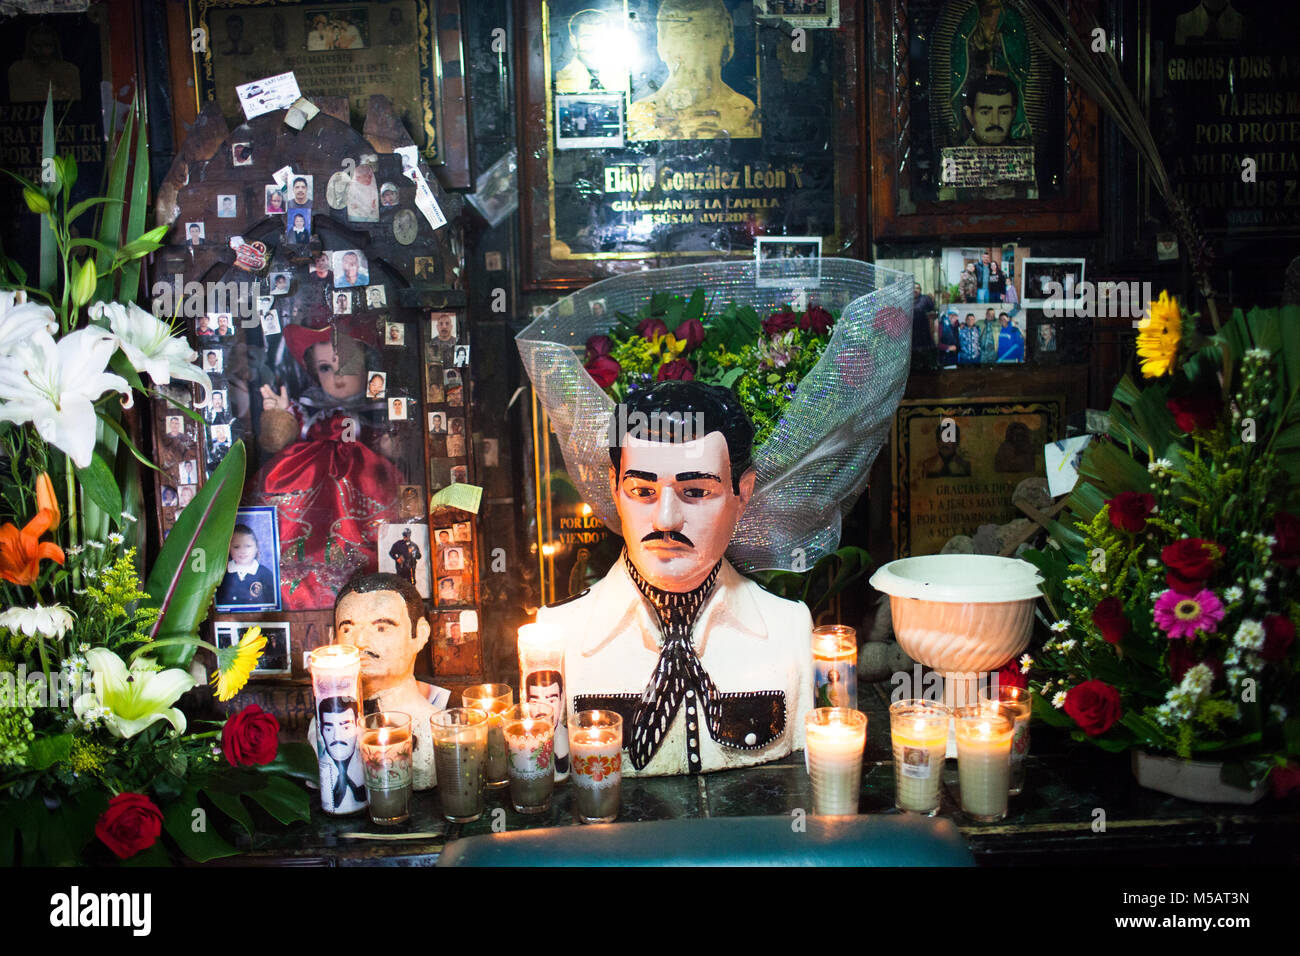 Une statue et sanctuaire de Jesoes Culiac Malverde dans‡n, Sinaloa, Mexique le Jeudi, Juillet 16, 2015. Bien que Jesoes Malverde n'est pas reconnu par toute église comme un saint, il a rassemblé une suite au Mexique. Connu comme un bandit de style Robin des Bois, il est devenu un saint pour de nombreuses personnes, y compris les criminels narco au Mexique. Le Sinaloa est aussi est l'état Mexicain où le célèbre chef du cartel de la drogue Joaquín'n 'El Chapo Guzmán"‡n est de. Guzmán‡n récemment échappé d'une prison mexicaine à sécurité maximale pour la deuxième fois. Banque D'Images